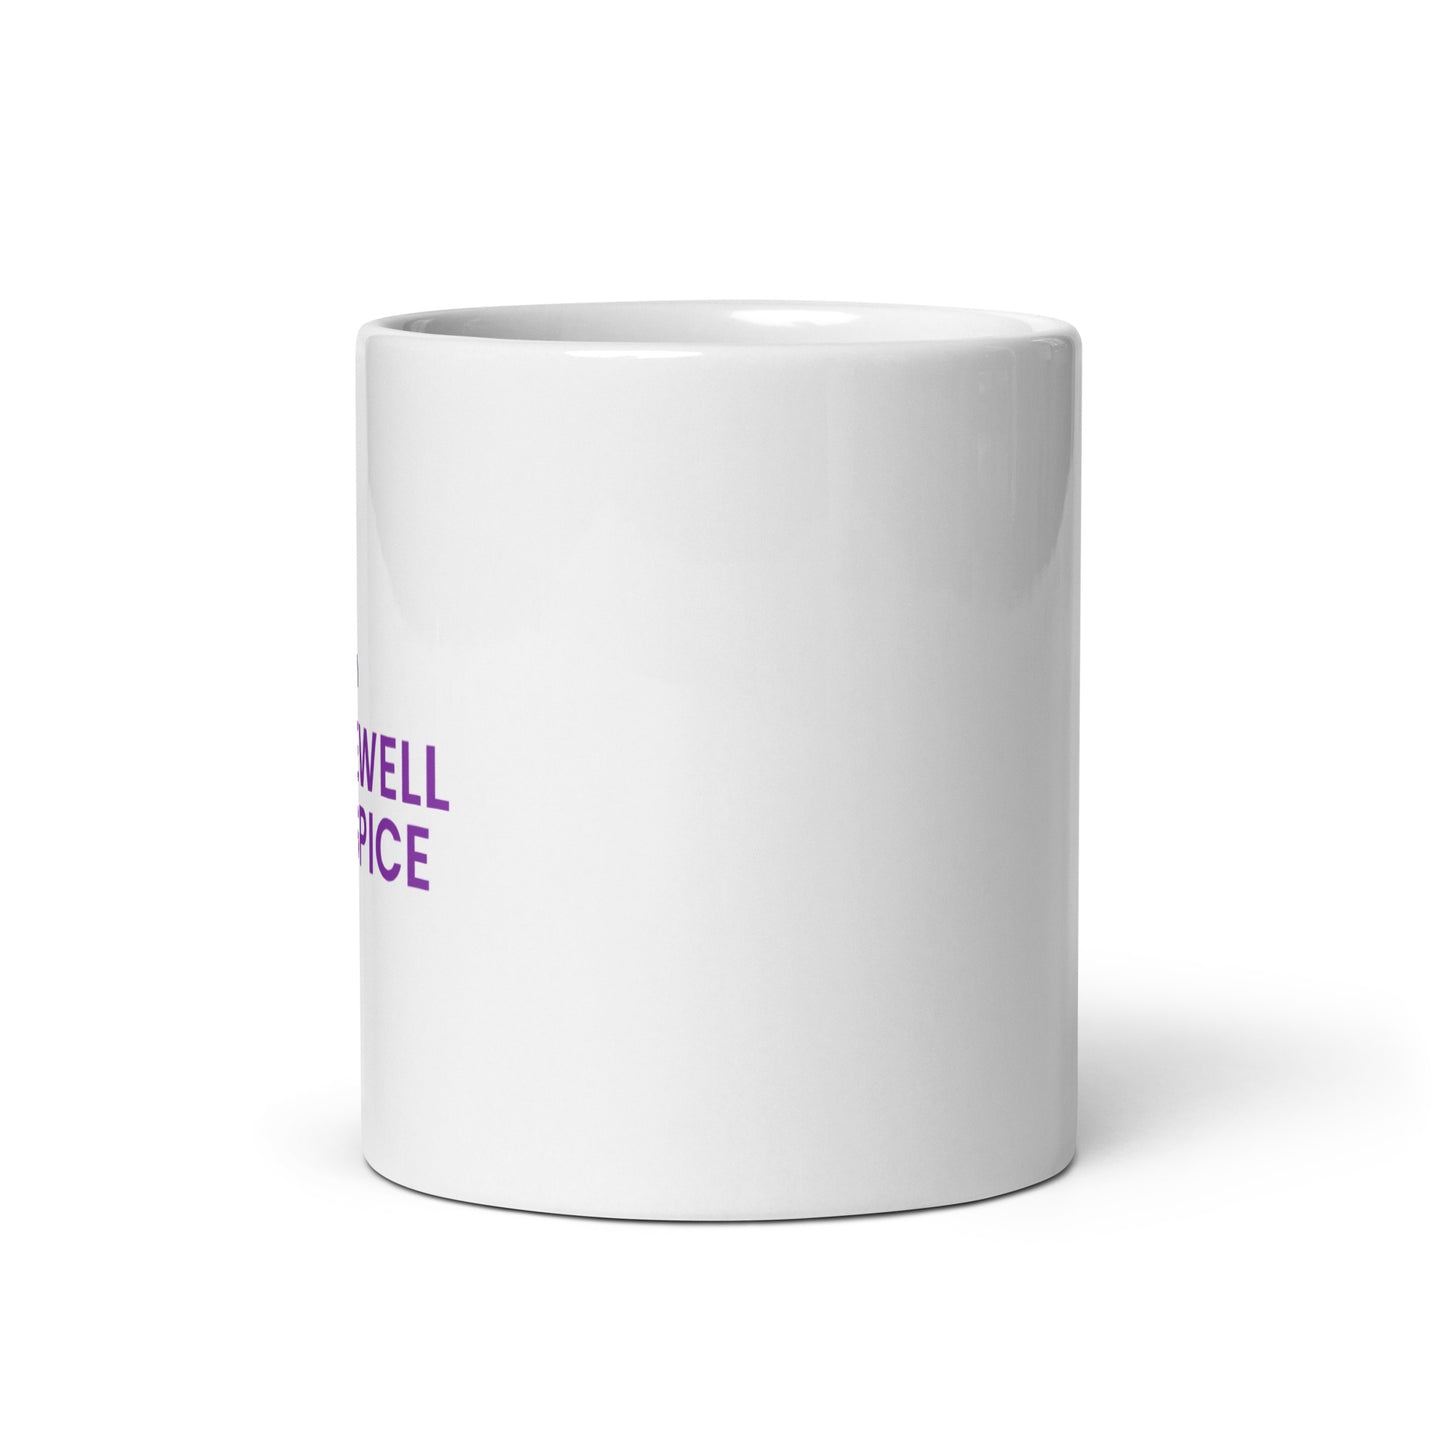 White glossy mug - Tidewell Hospice